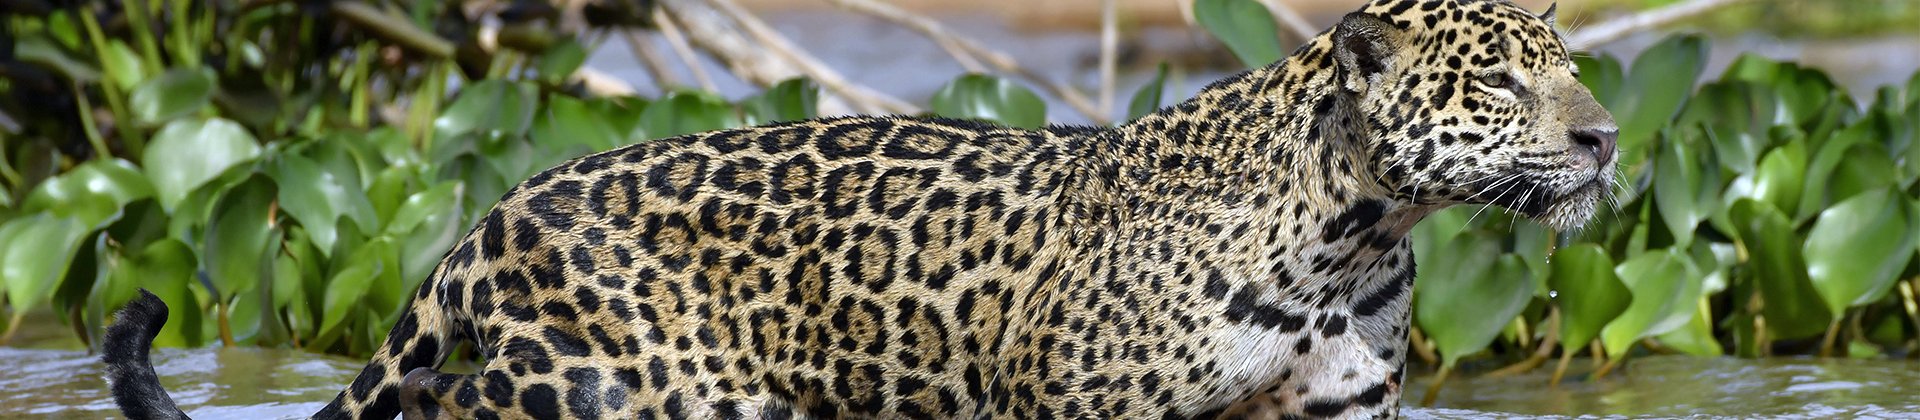 Jaguar pantanal